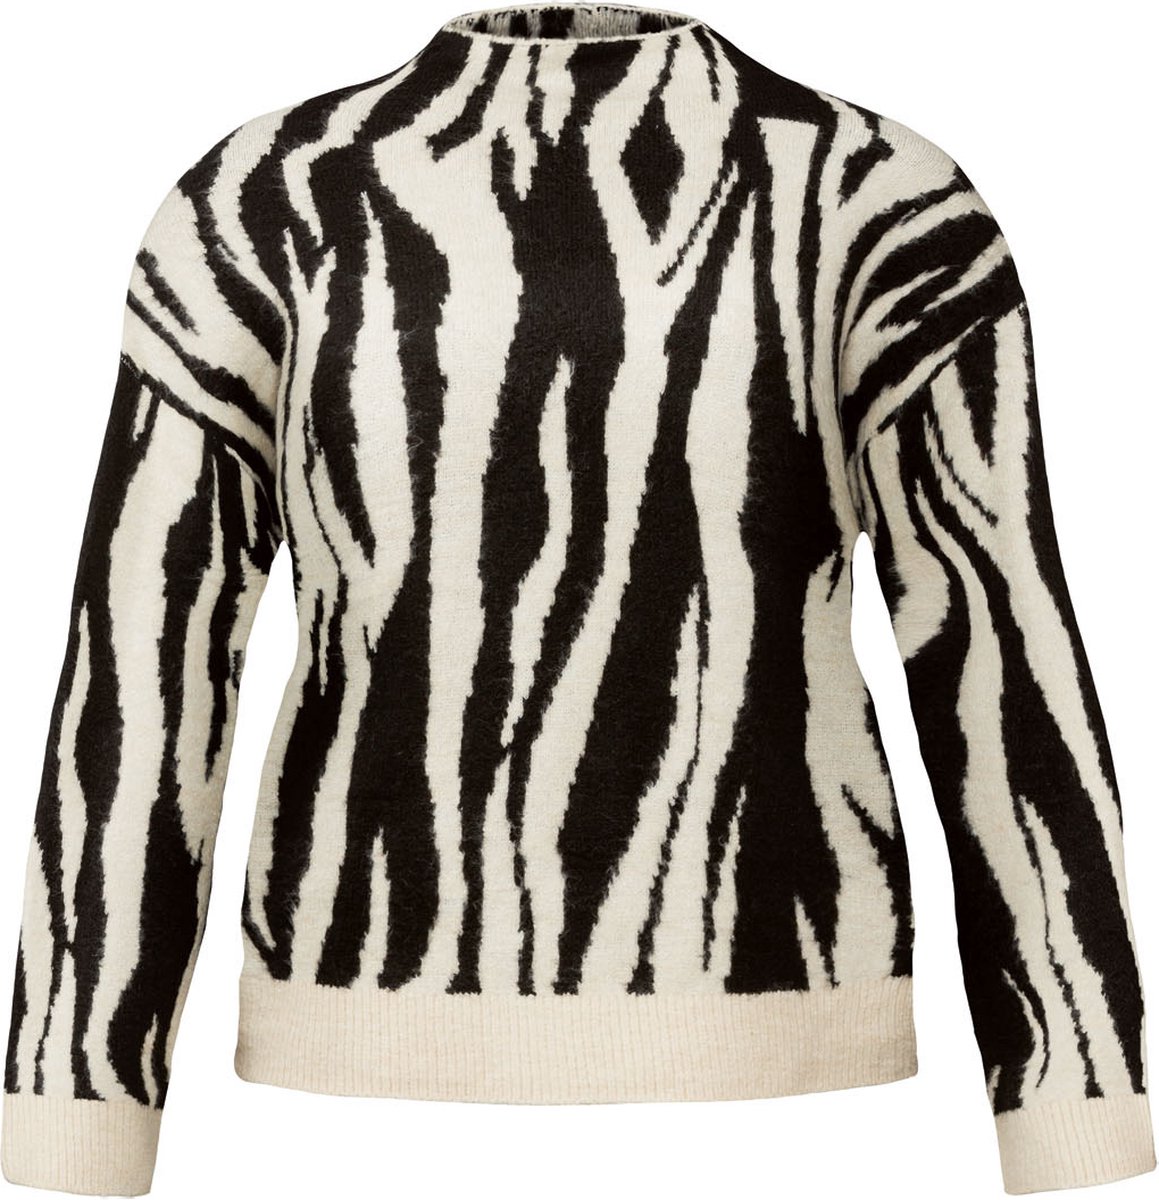 Esmara Dames Trui - Zebra - XS (32/34) - Kenmerk: met boorden - Aangenaam zachte kwaliteit - Casual gesneden - Optimale pasvorm dankzij elastaan